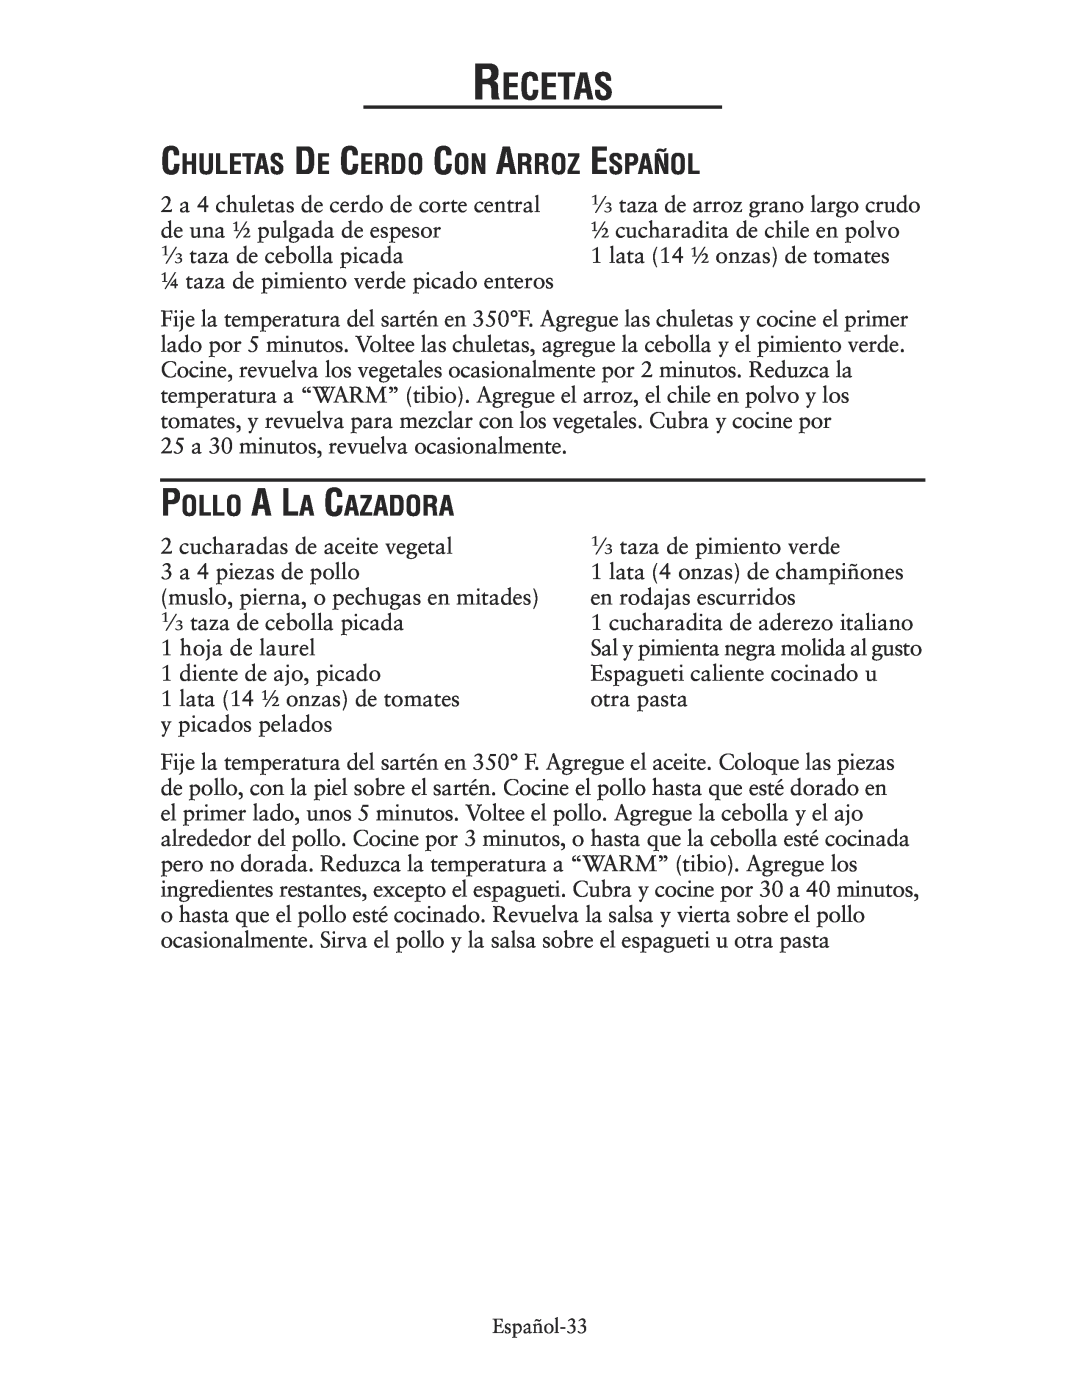 Oster CKSTSKRM20 user manual Chuletas De Cerdo Con Arroz Español, Pollo A La Cazadora, Recetas 